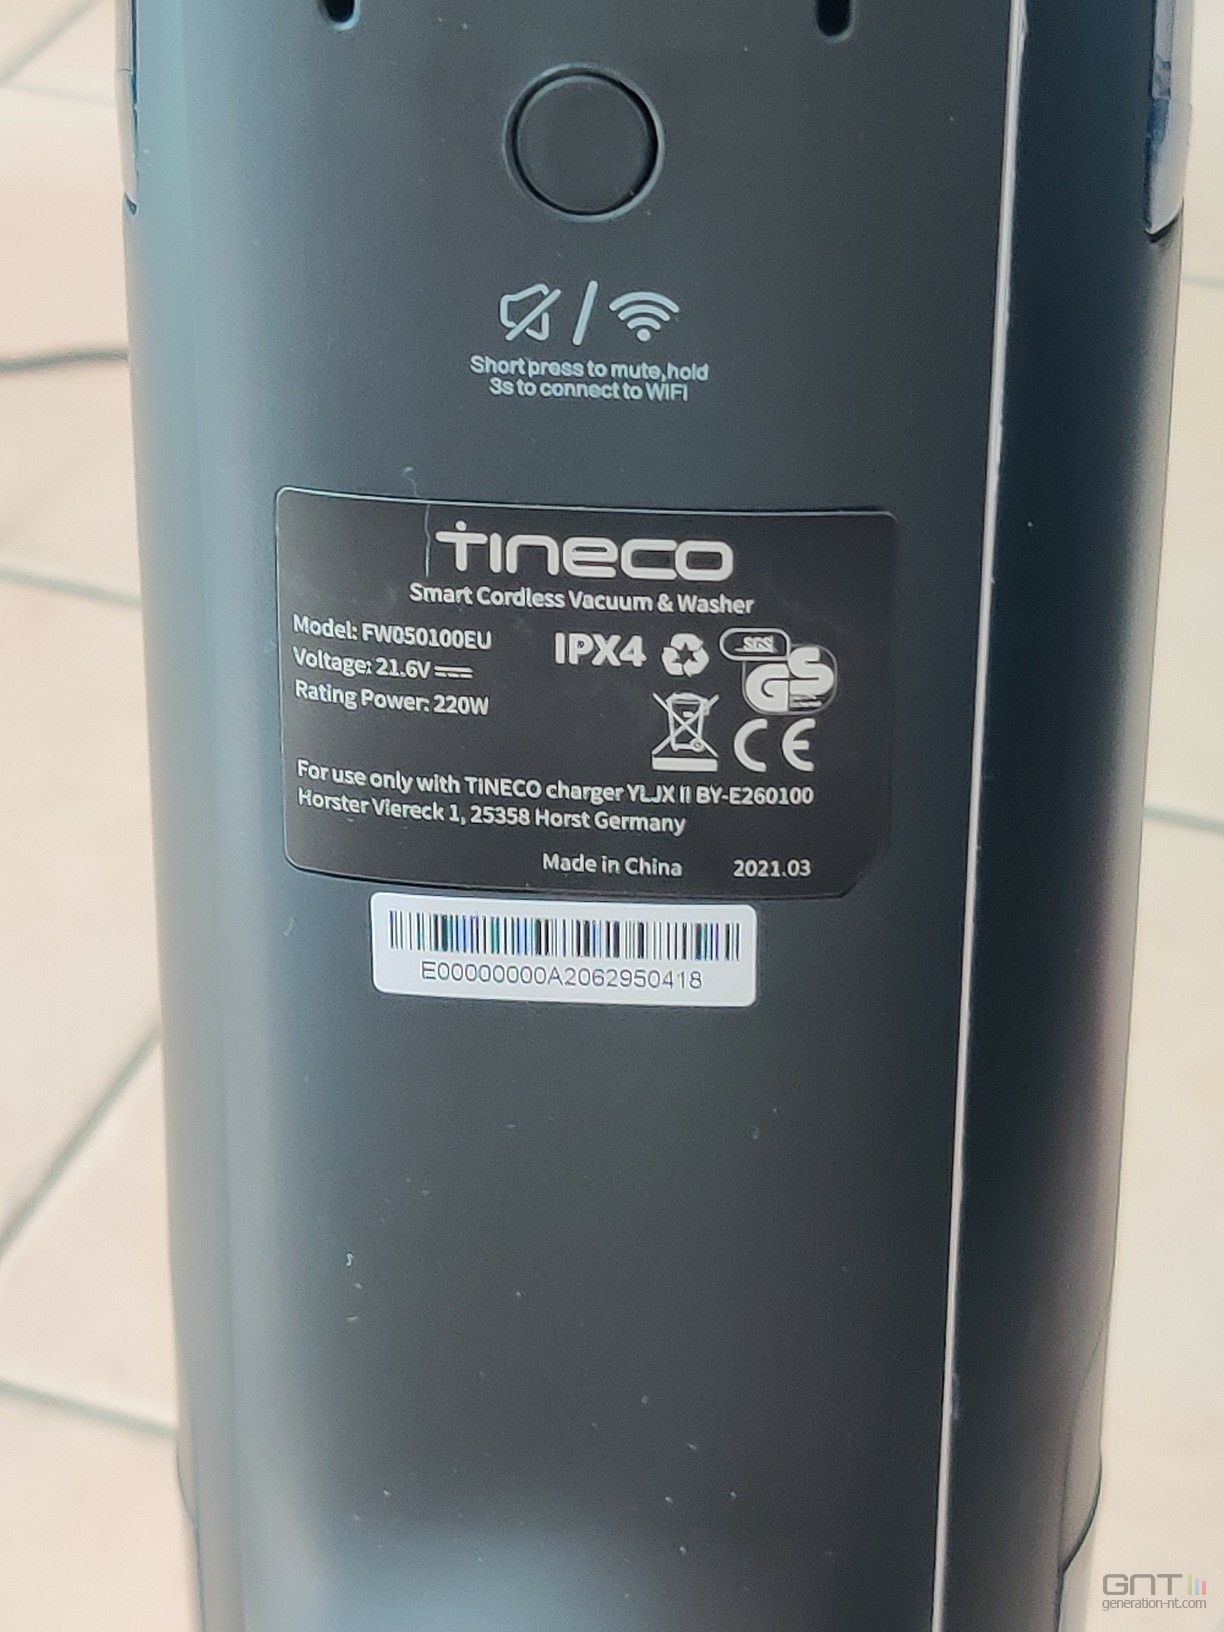 Tineco Floor One S3 - ConnectivitÃ© WiFi